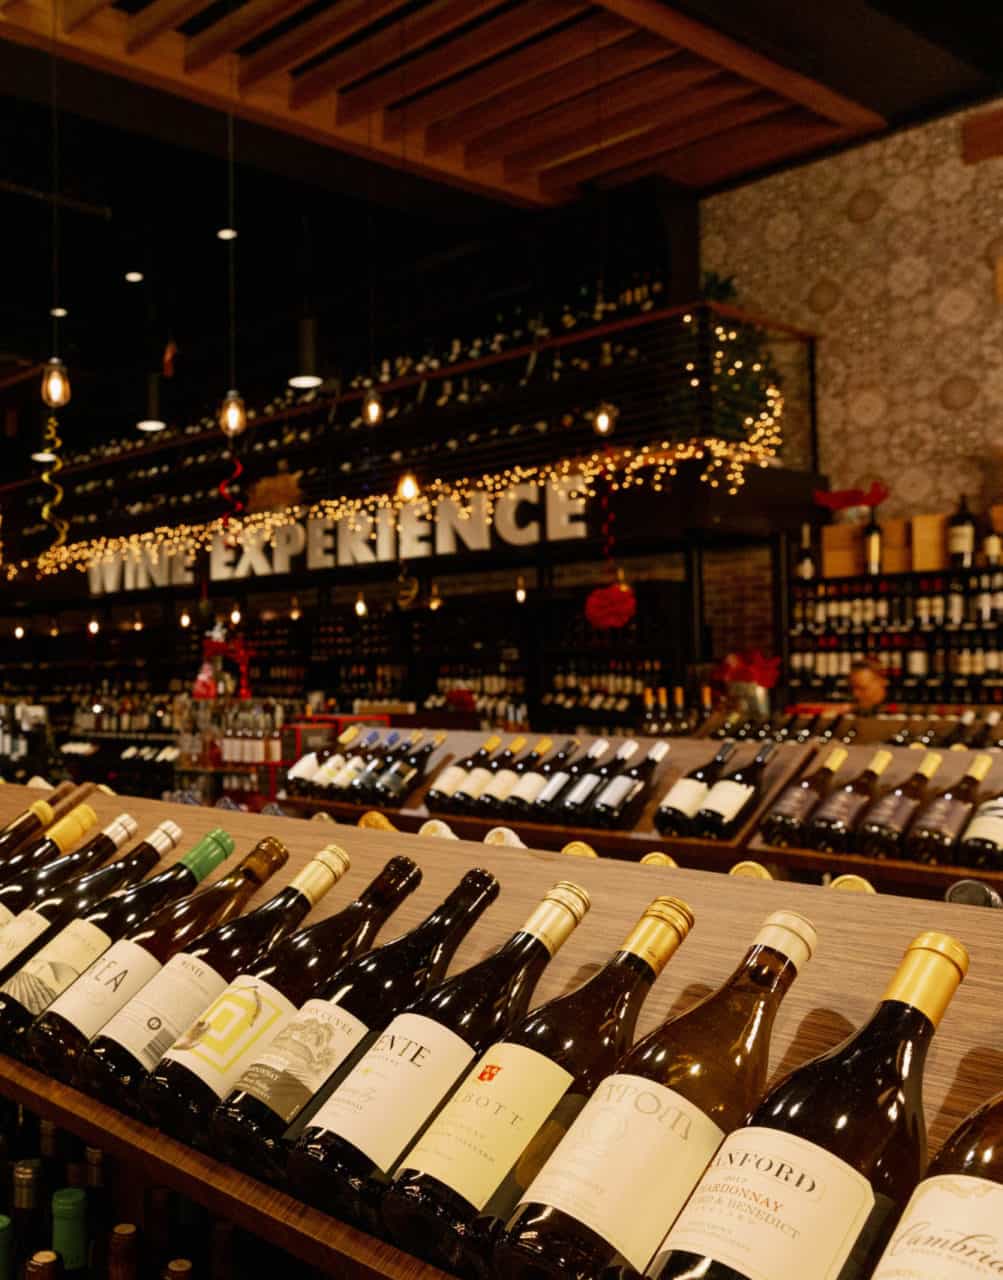 Wide range of wines